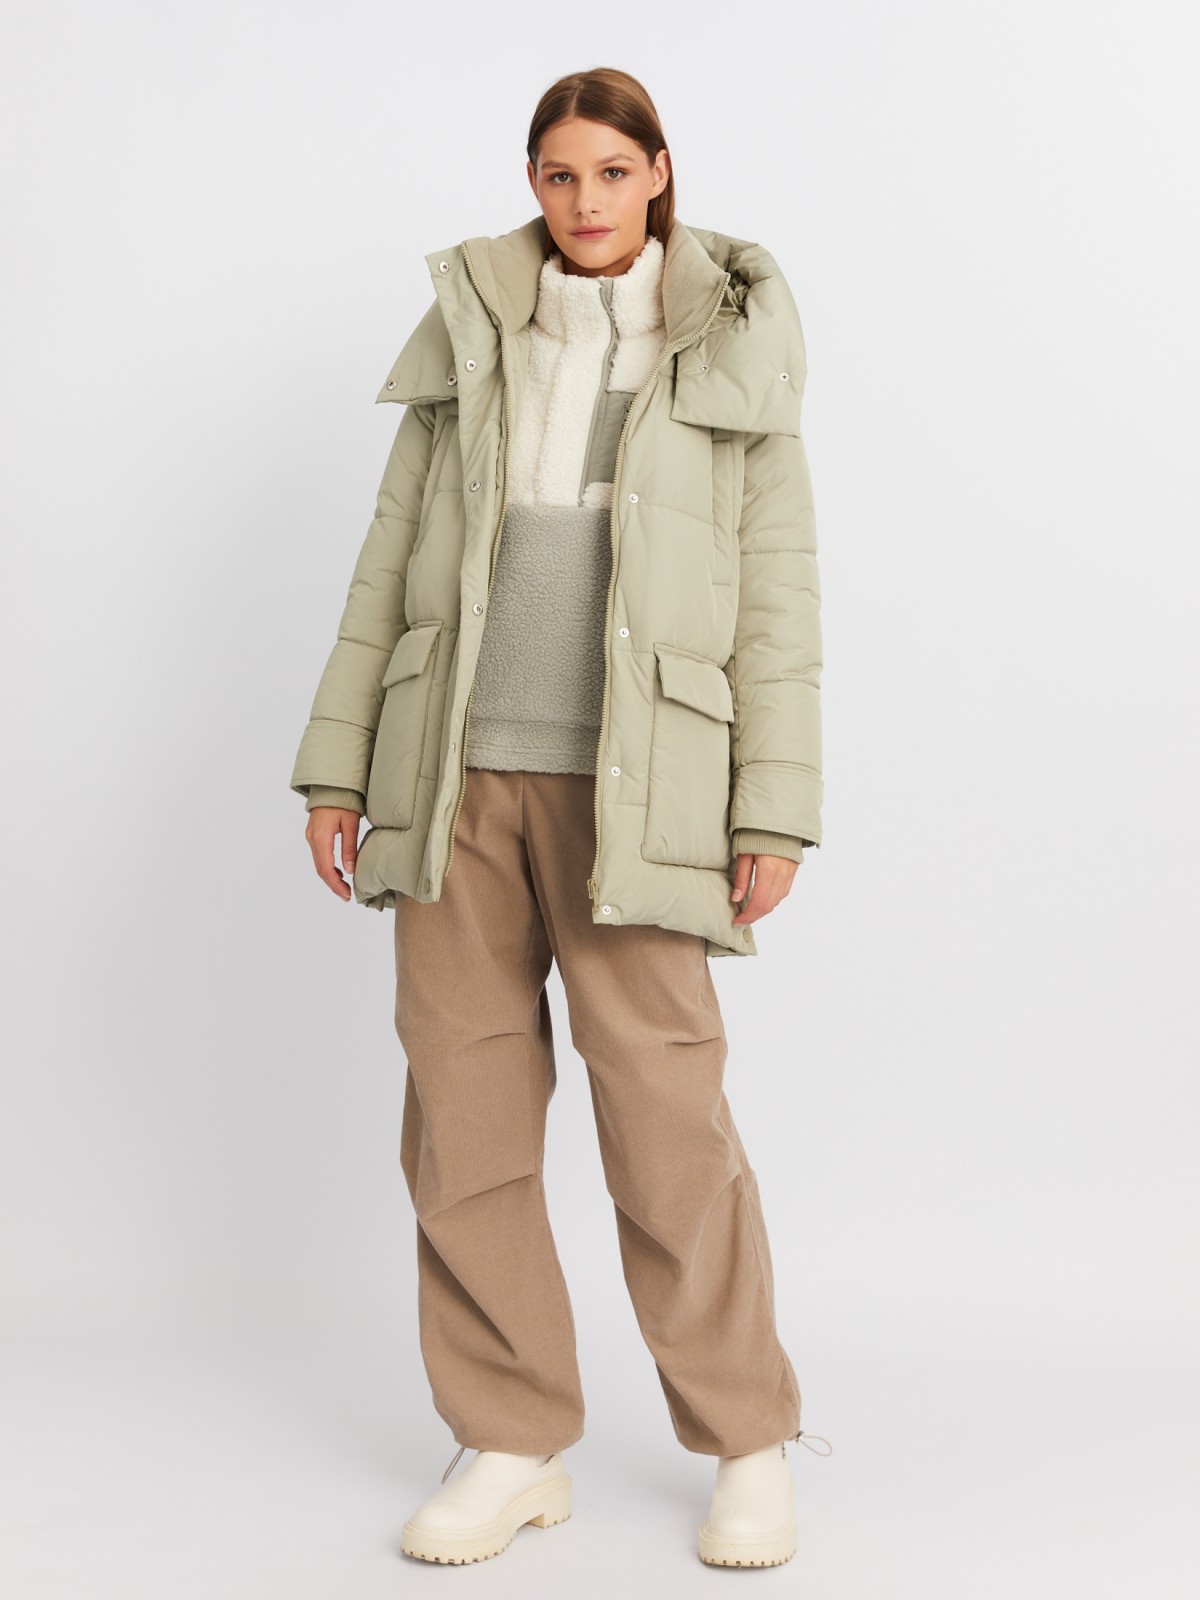 Тёплая куртка-пальто с капюшоном и боковыми шлицами zolla 022425212054, цвет хаки, размер XS - фото 2